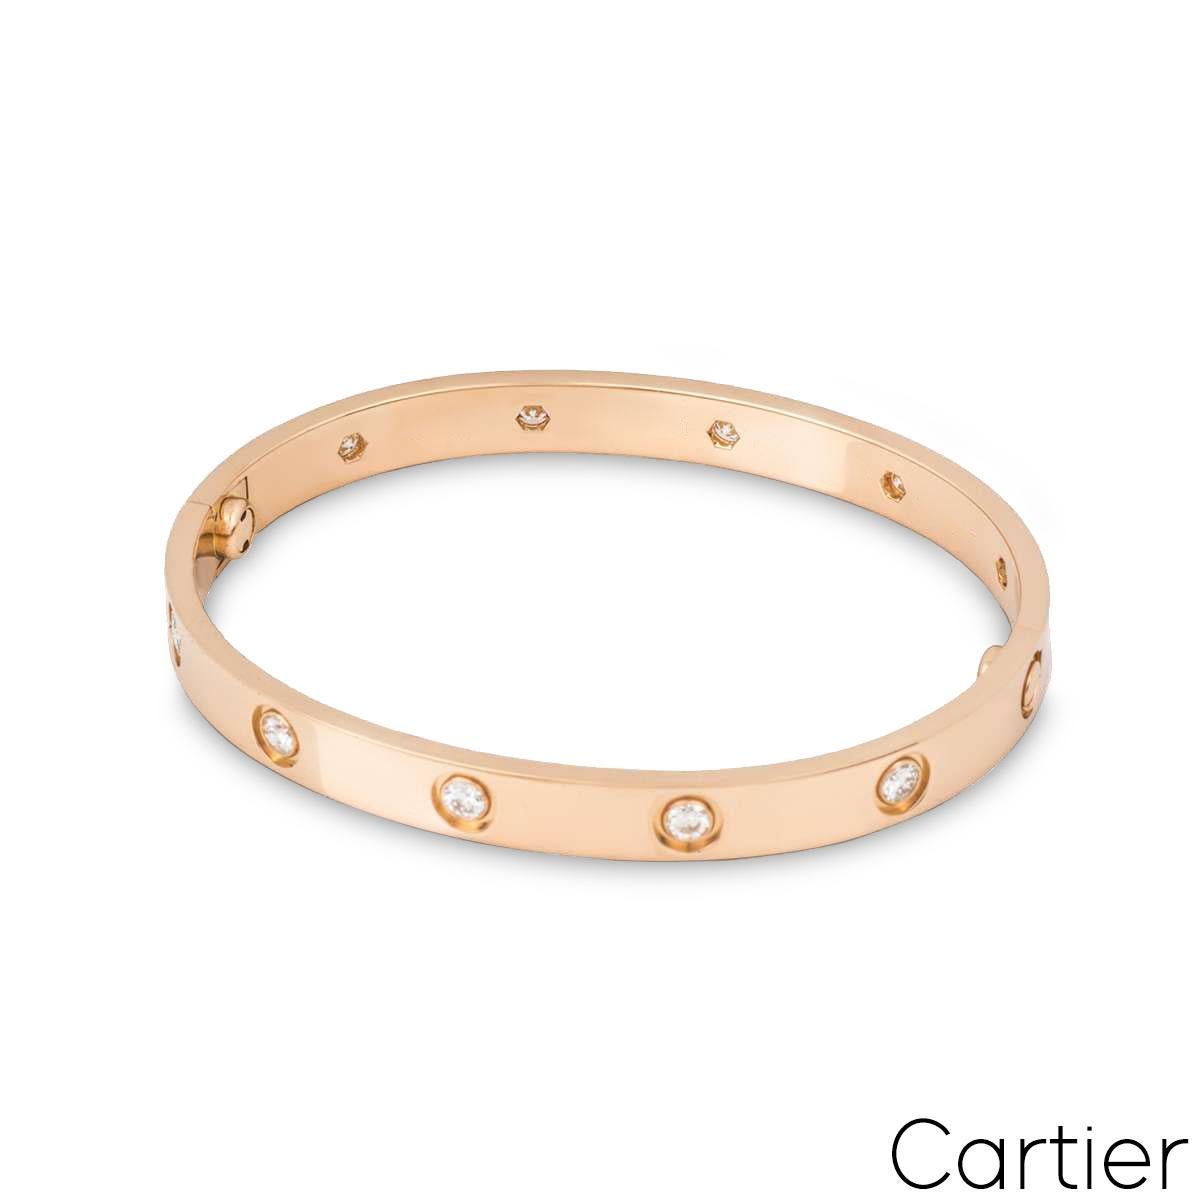 cartier love bracelet dimensions